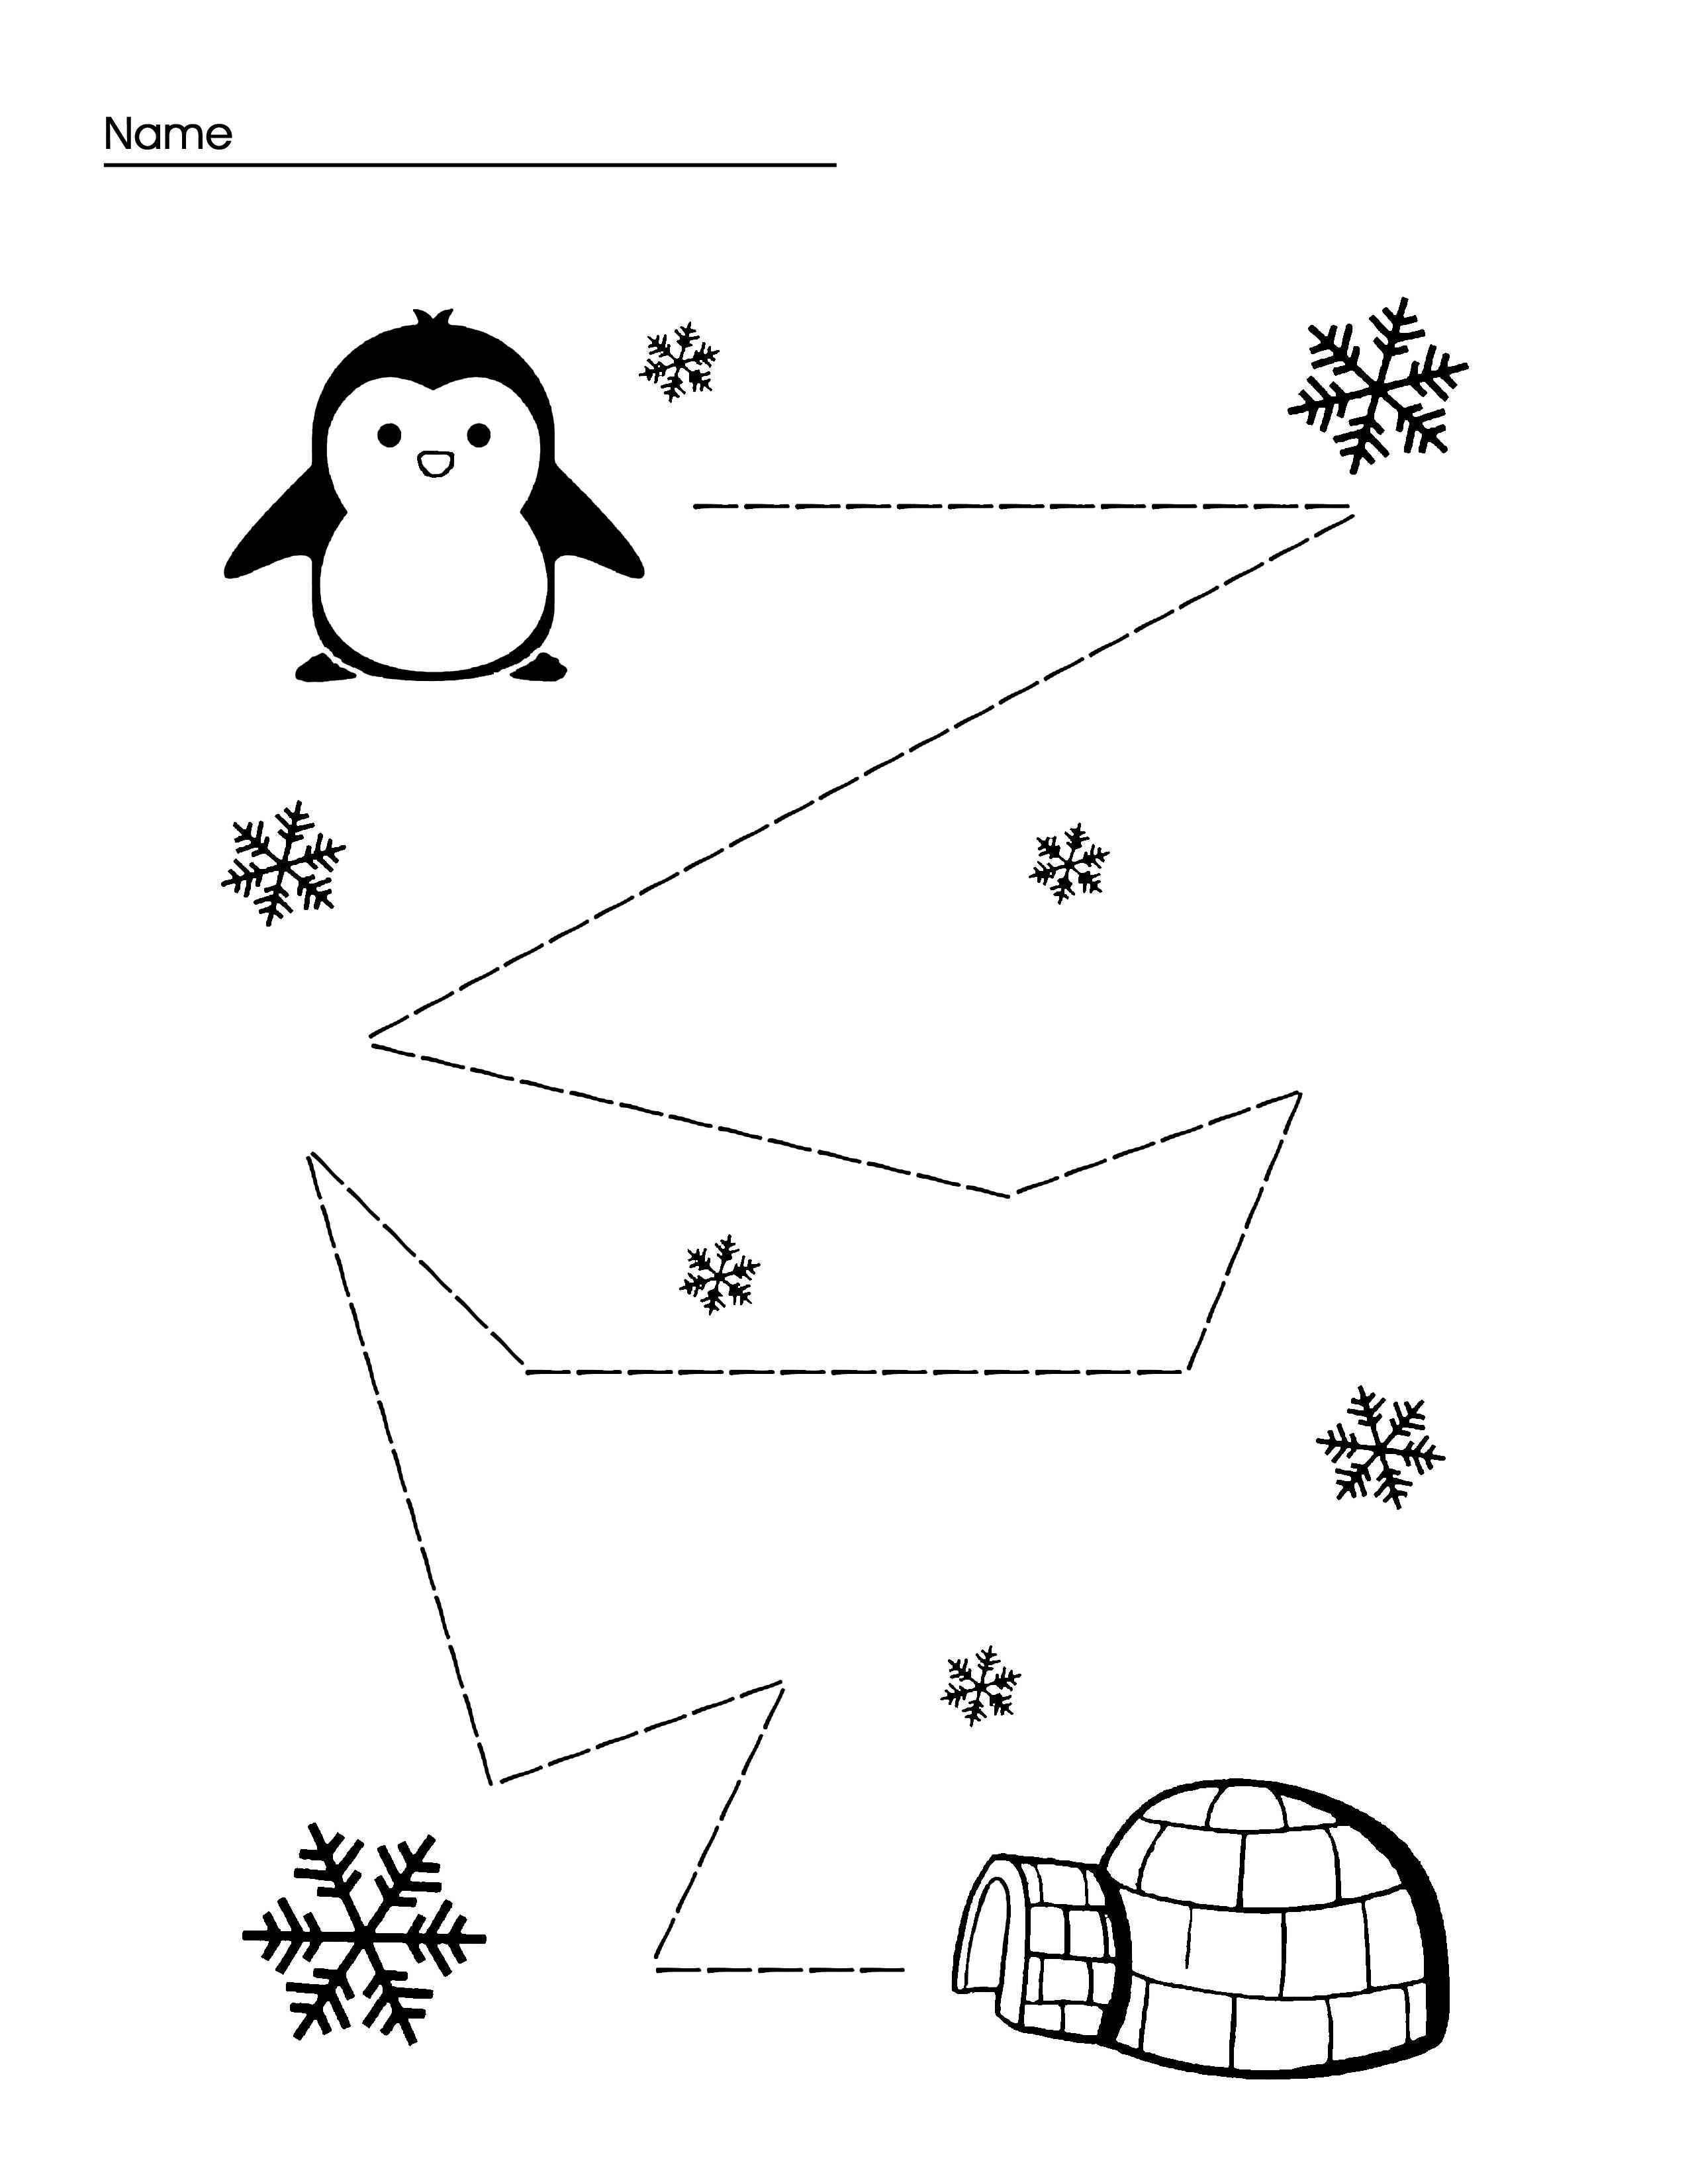 Penguin line tracing preschool activity page